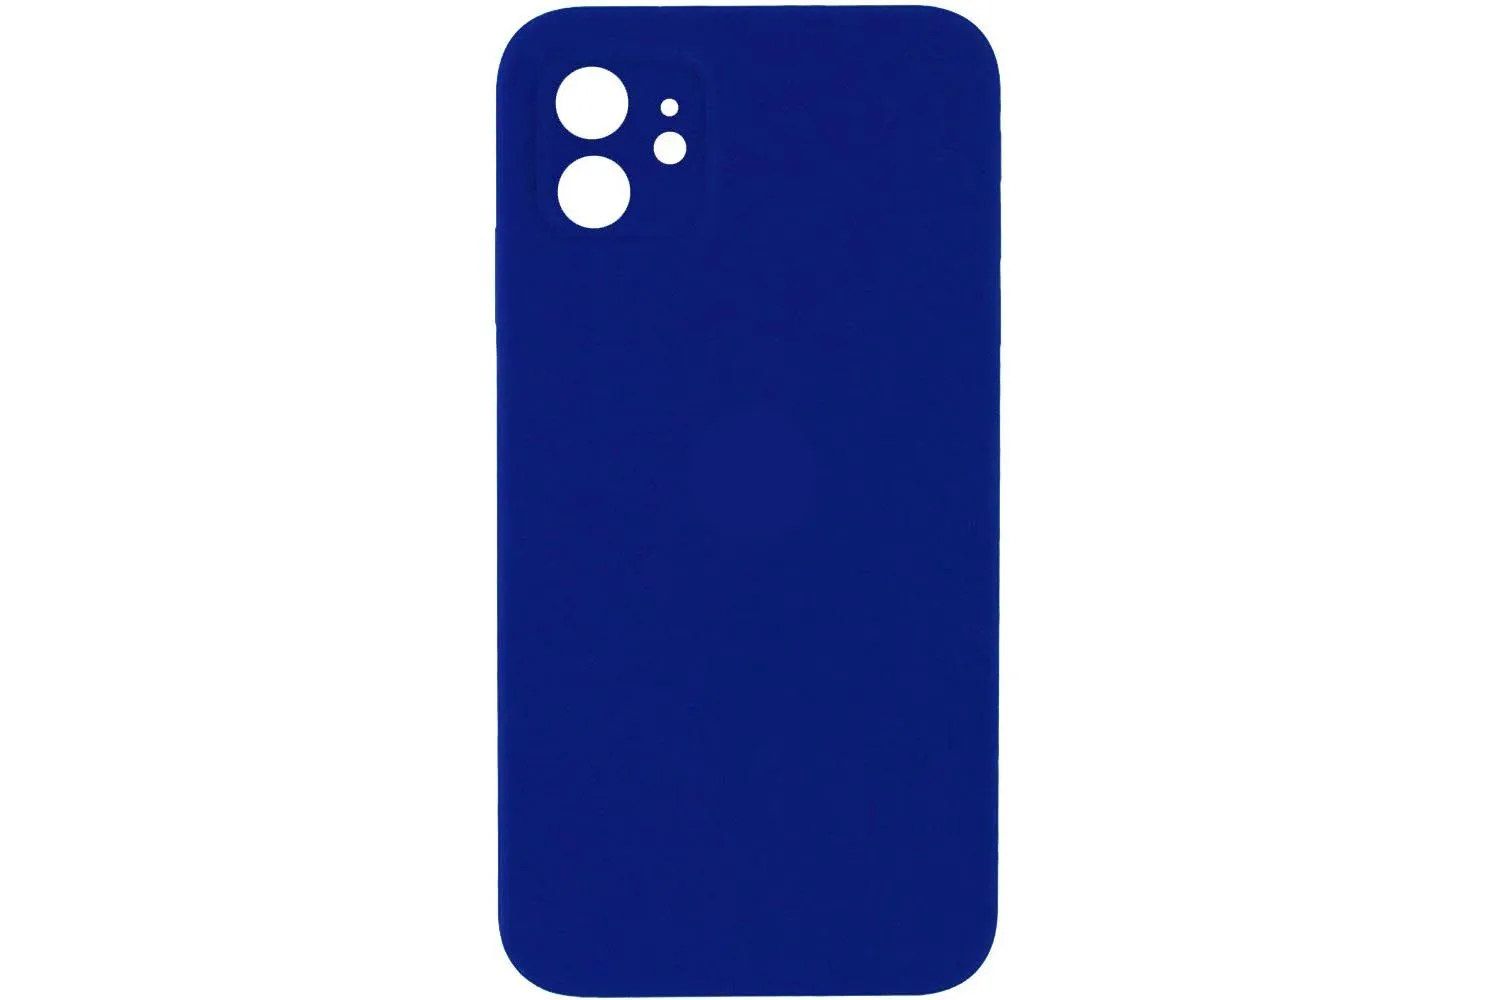 Чехол силиконовый с защитой камеры для Apple iPhone 11 (ярко - синий)